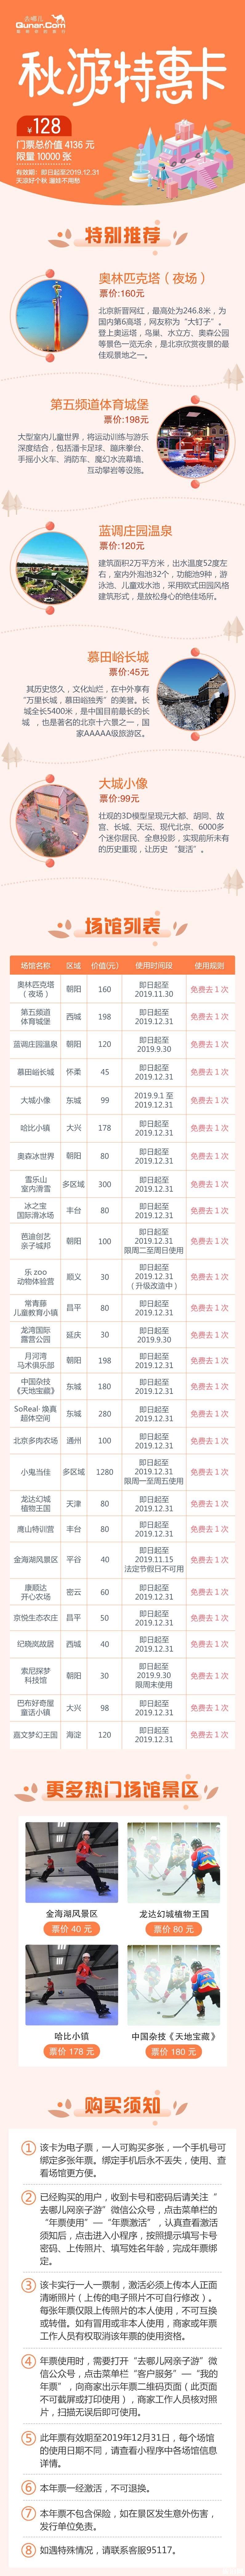 2019北京秋游特惠年卡价格+景点名单